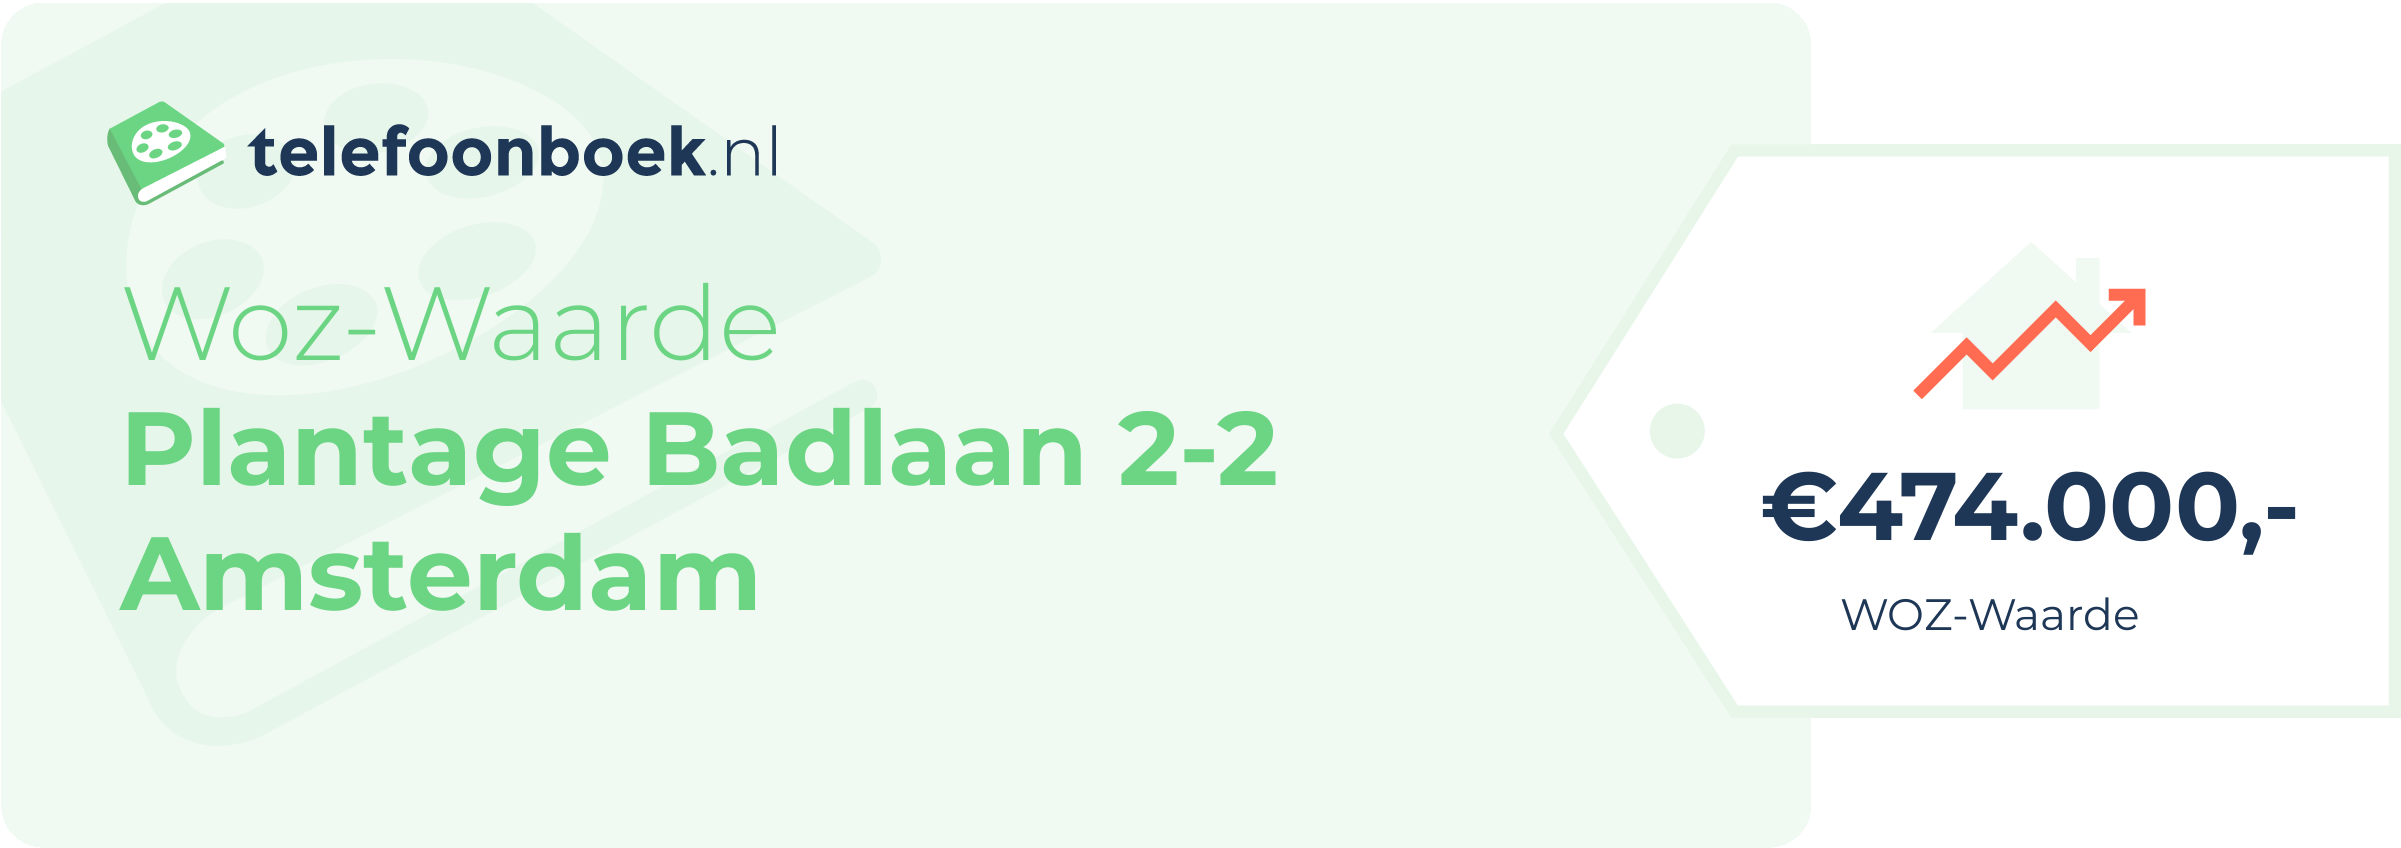 WOZ-waarde Plantage Badlaan 2-2 Amsterdam